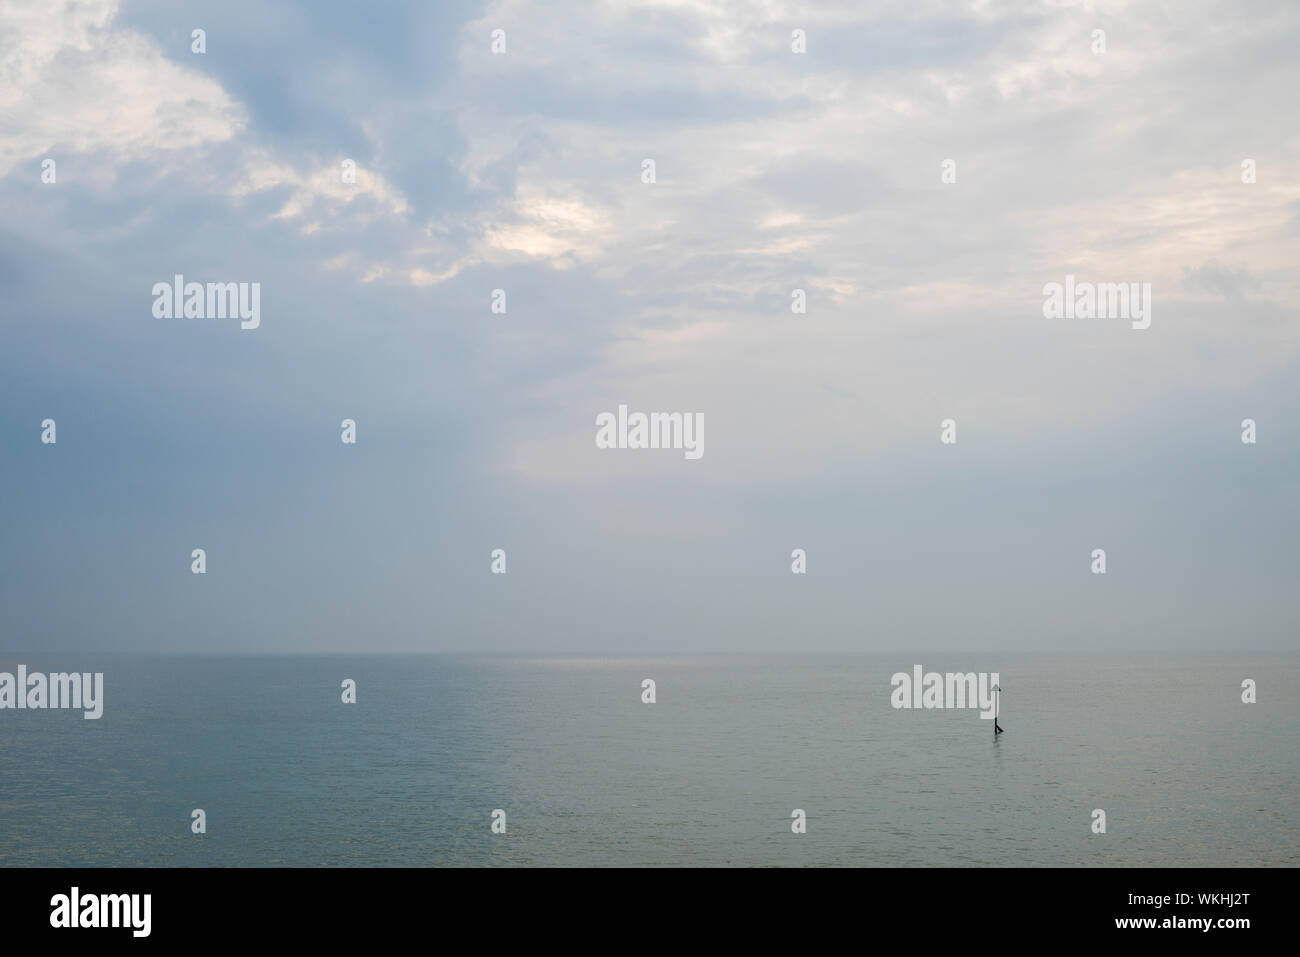 Eine friedliche bewölkter Himmel über ein ruhiges Meer mit einem einzigen groyne Marker. Stockfoto